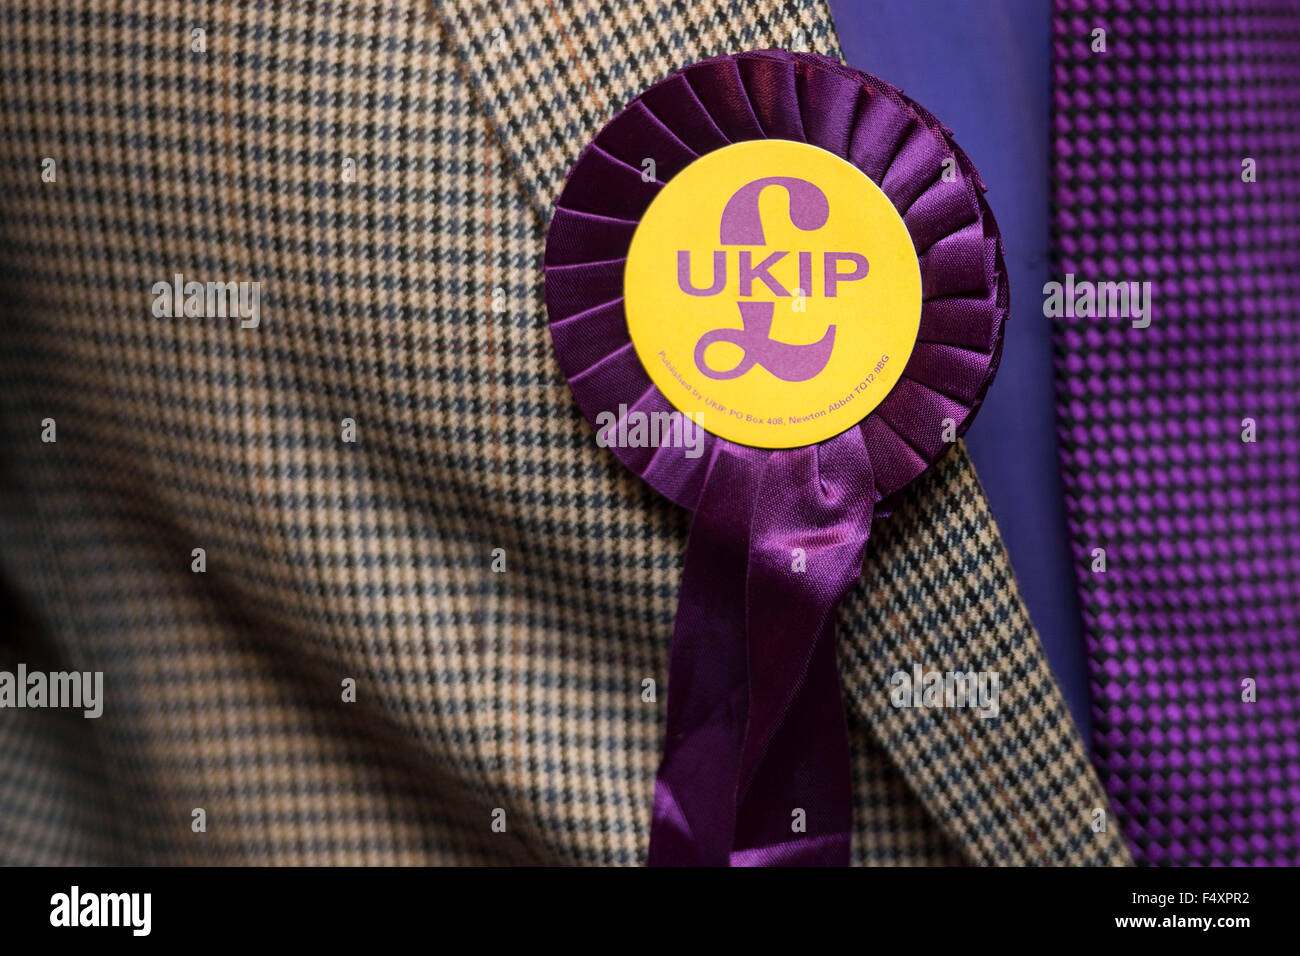 Eine Rosette UKIP (UK Independence Party) auf eine Tweed-Jacke. Stockfoto